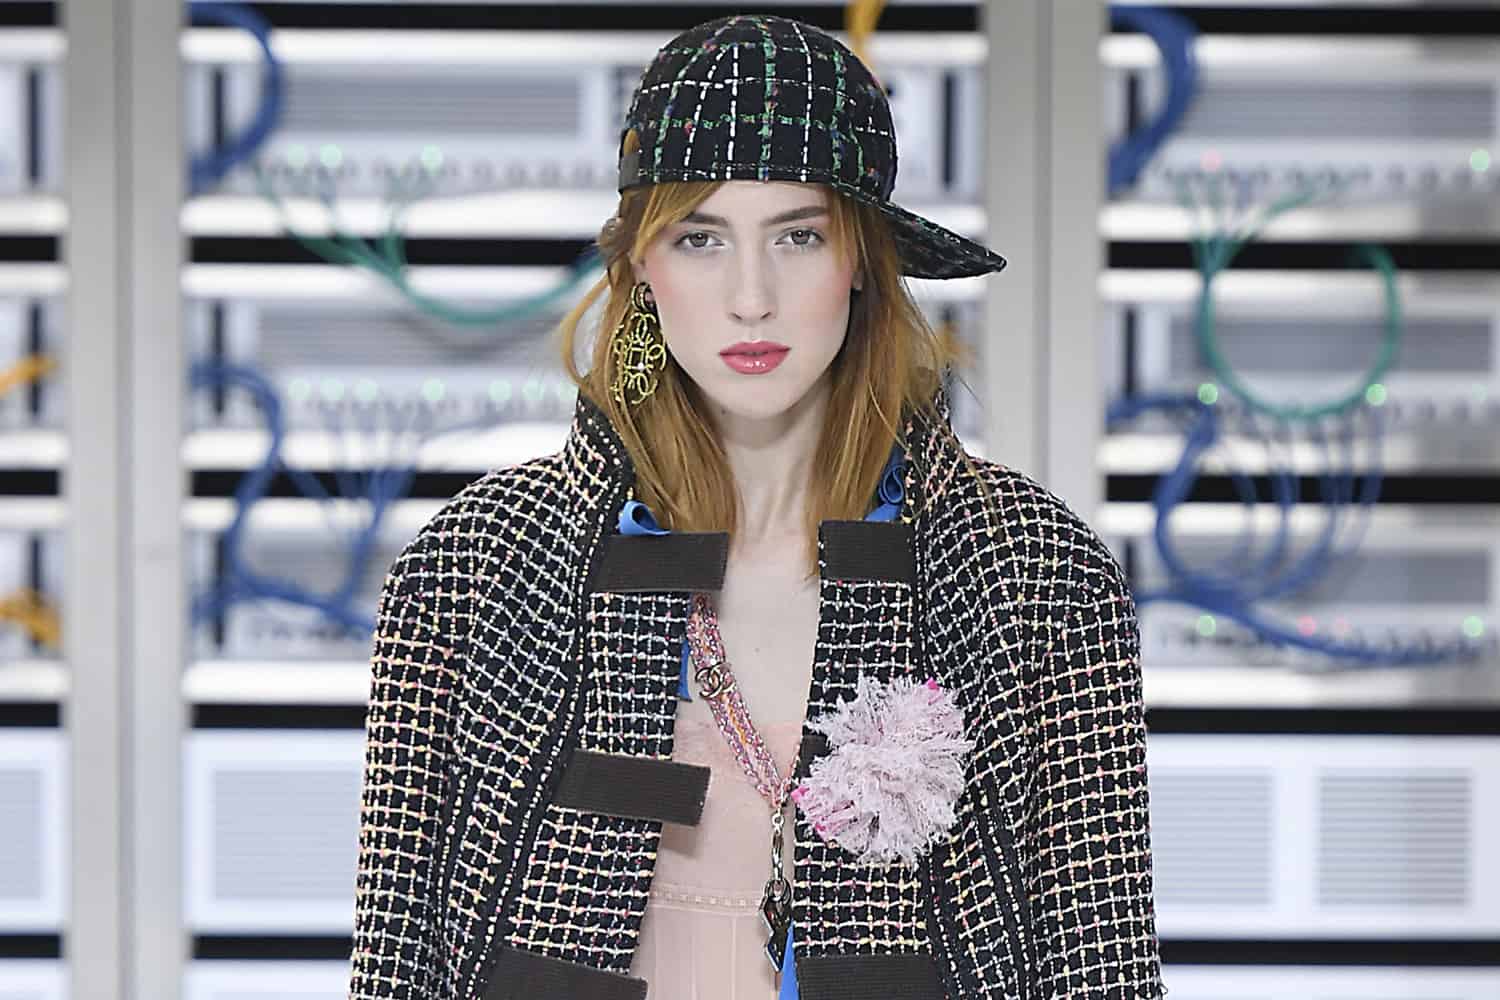 Chanel Beauty Taps Teddy Quinlivan, Revlon Explores Potential Sale